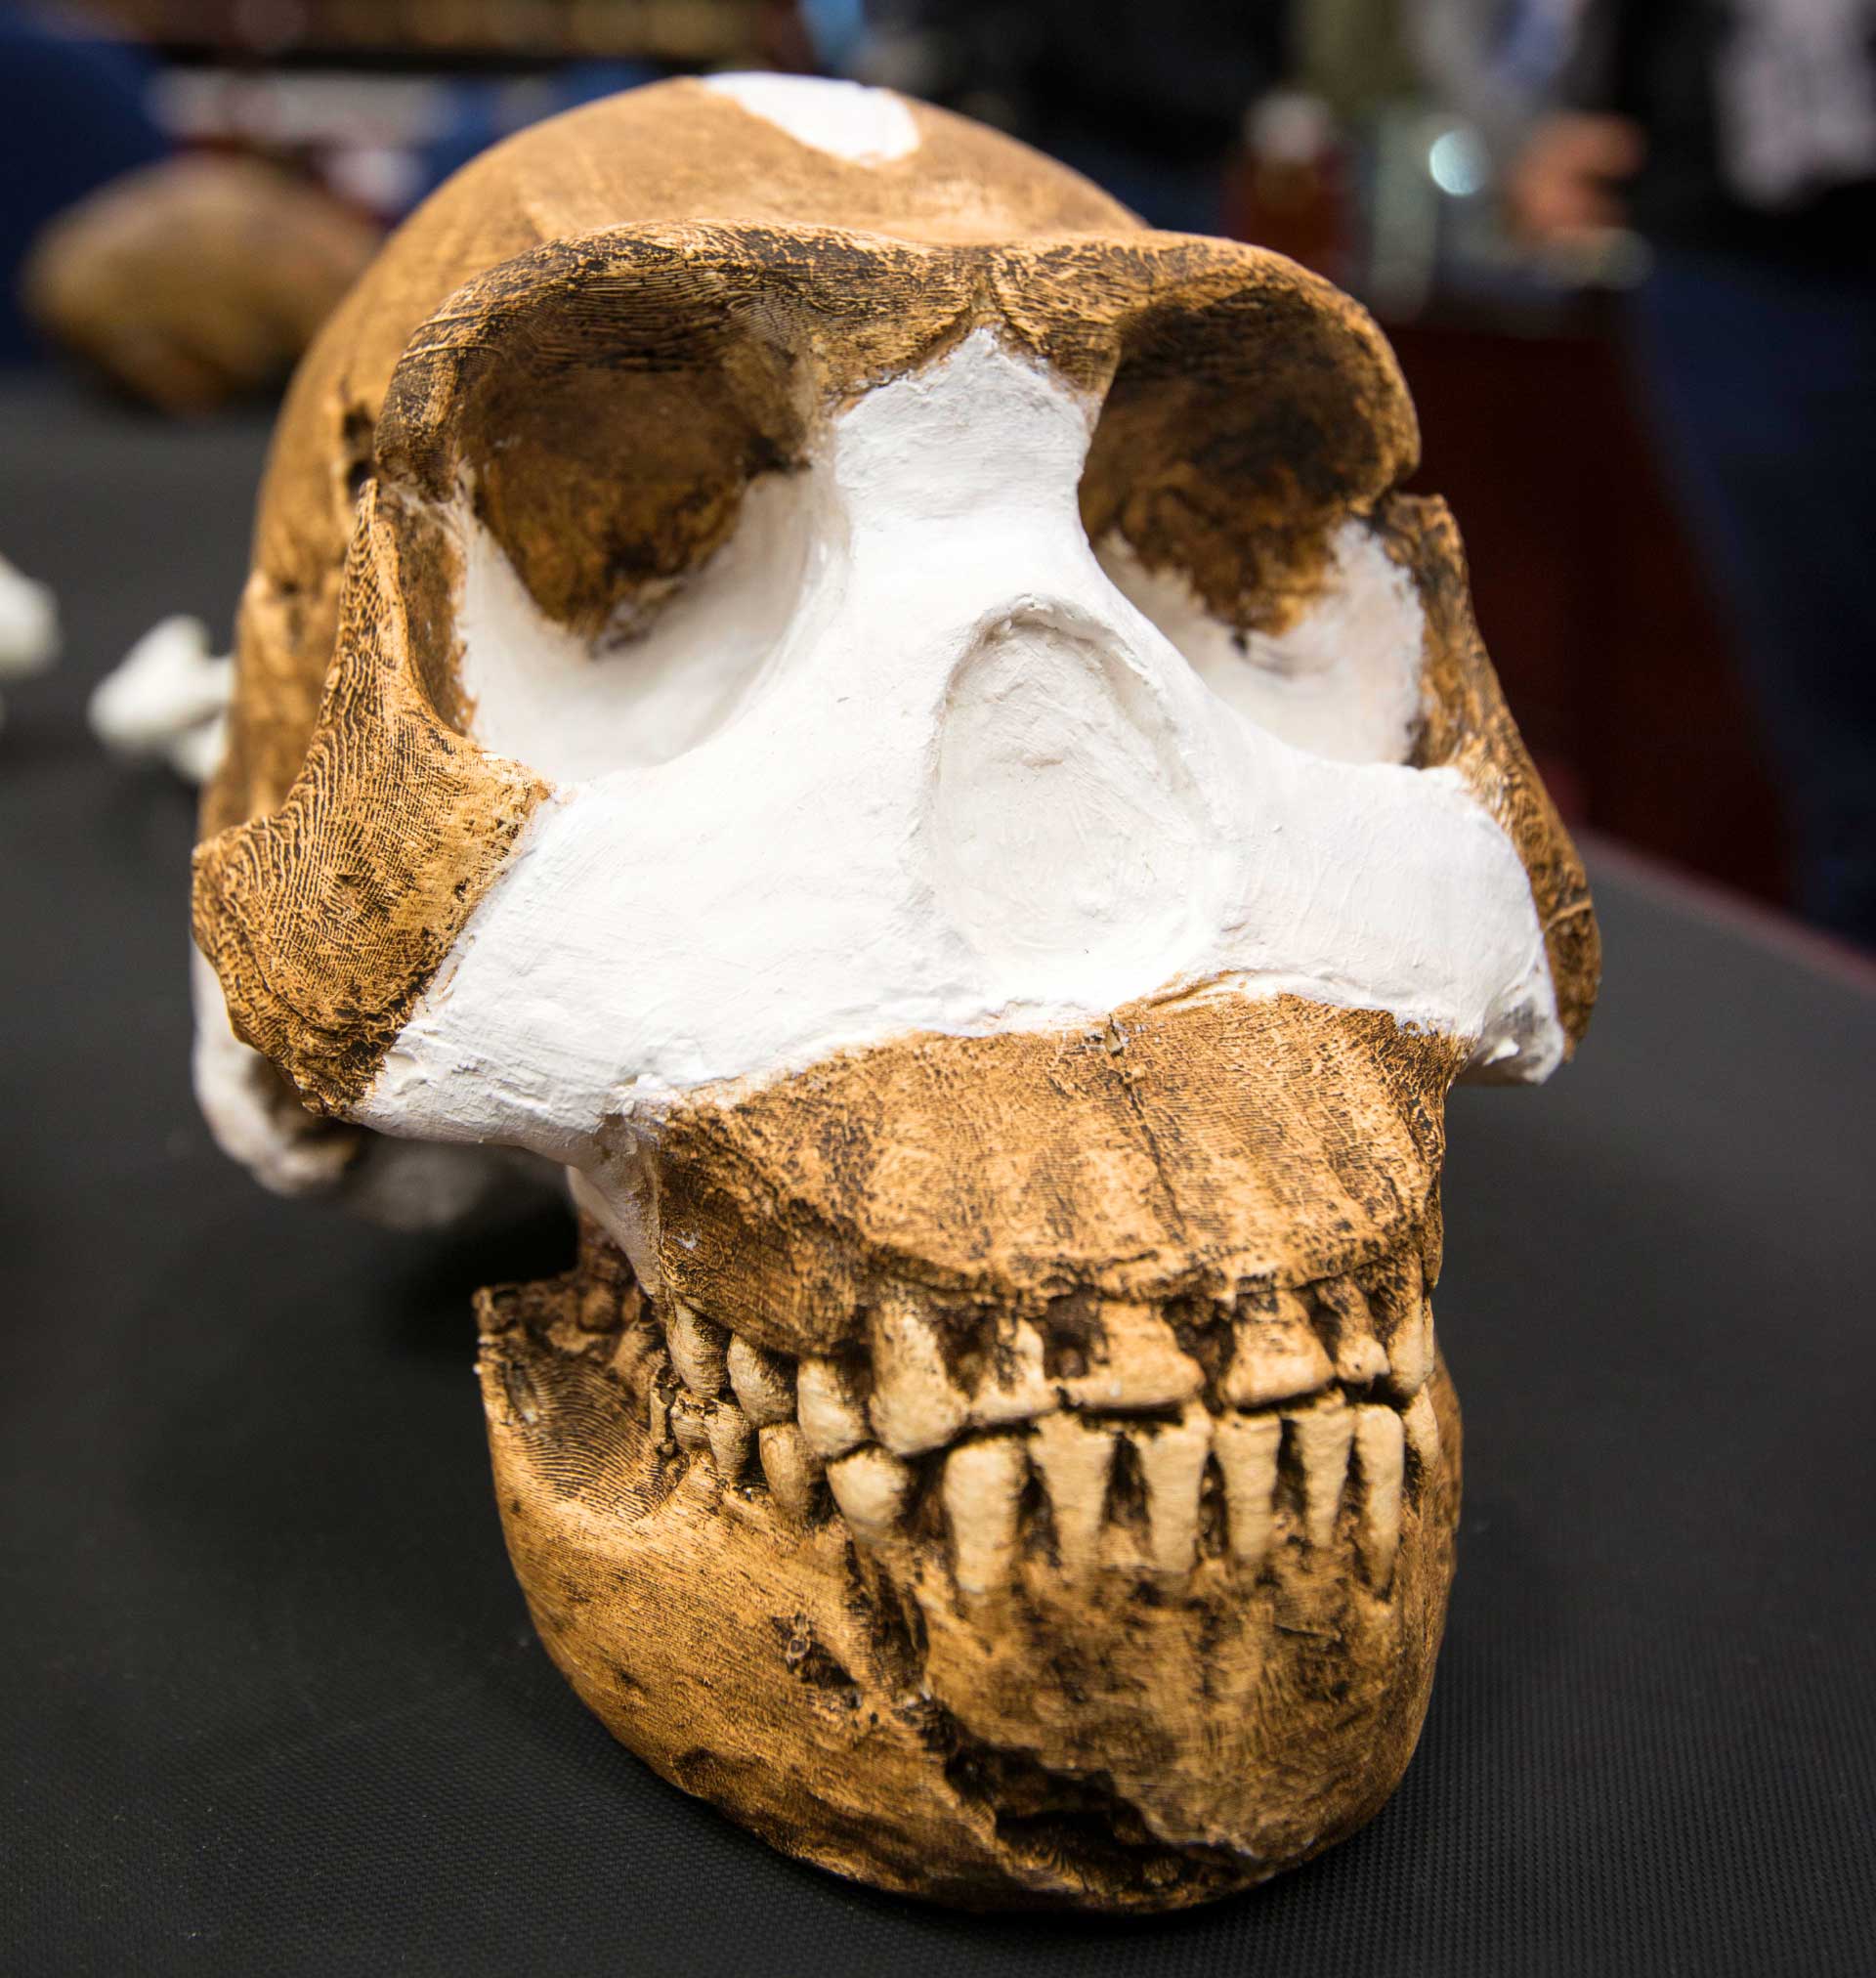 南非发现新人种化石遗骸“纳莱迪人”(Homo naledi)